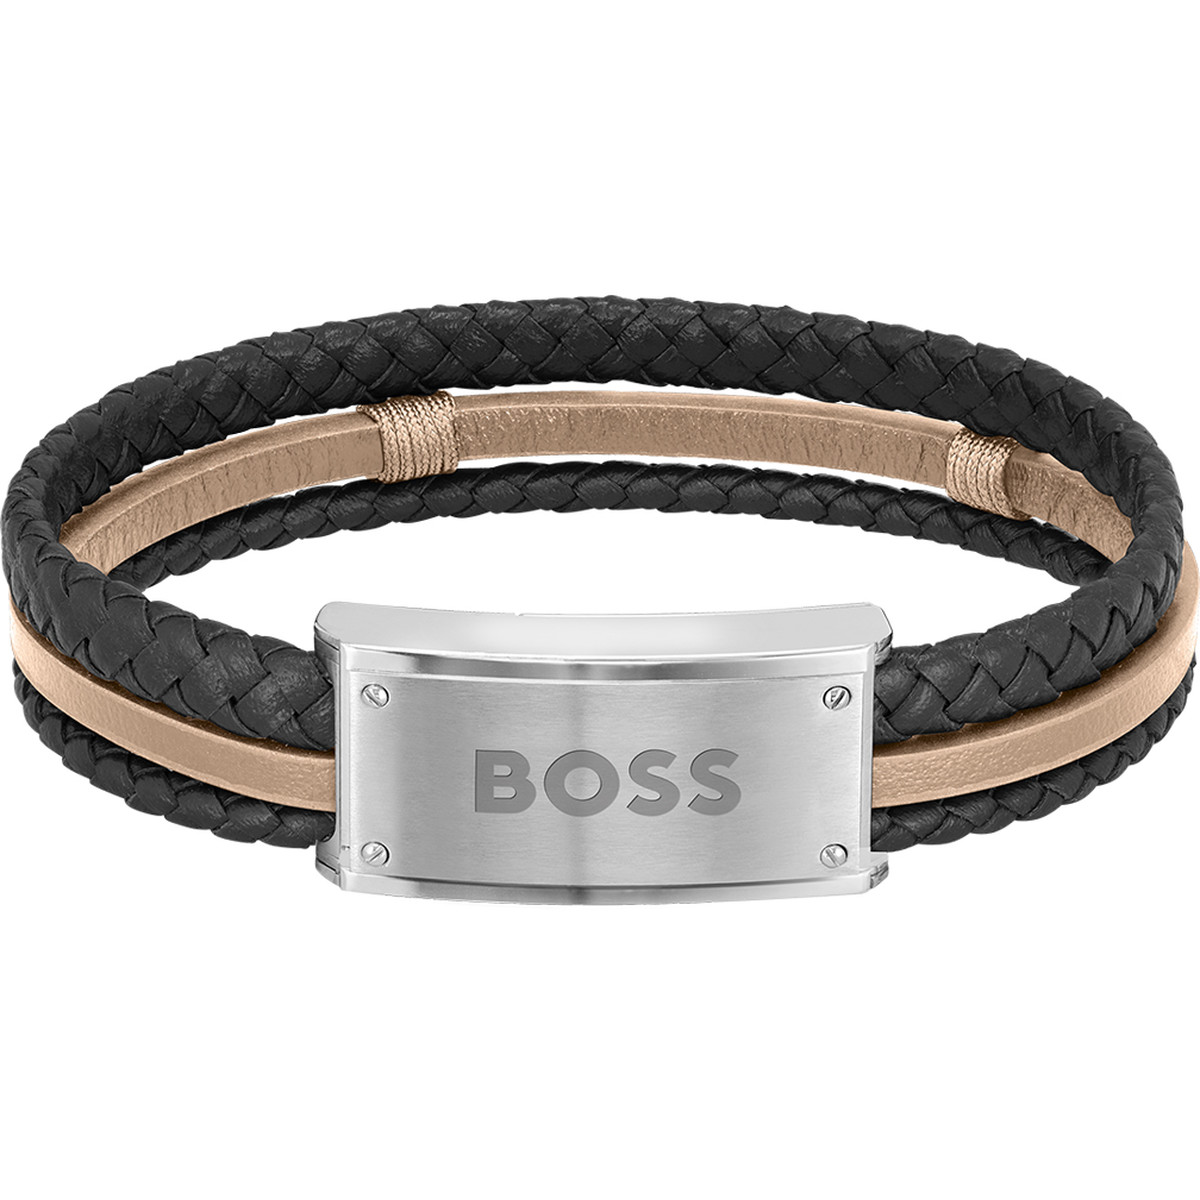 Bracelet Boss cuir noir marron acier 19,5 cm